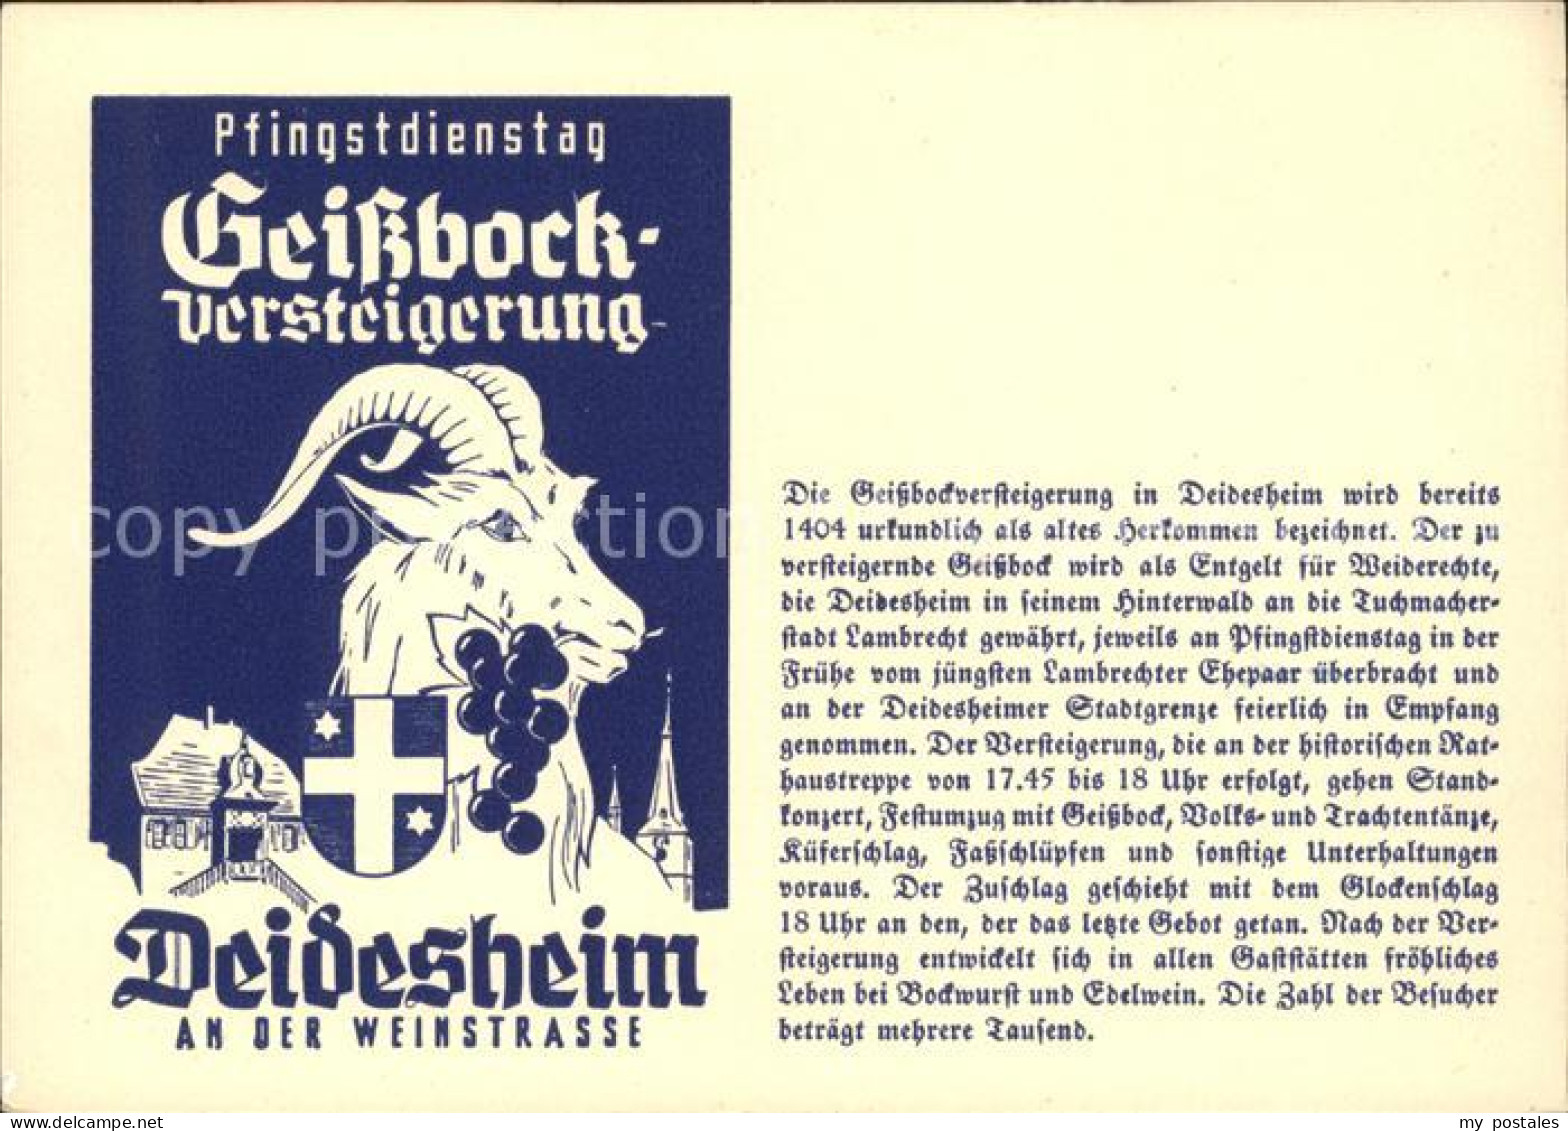 41793369 Deidesheim Geissbockversteigerung Deidesheim - Deidesheim